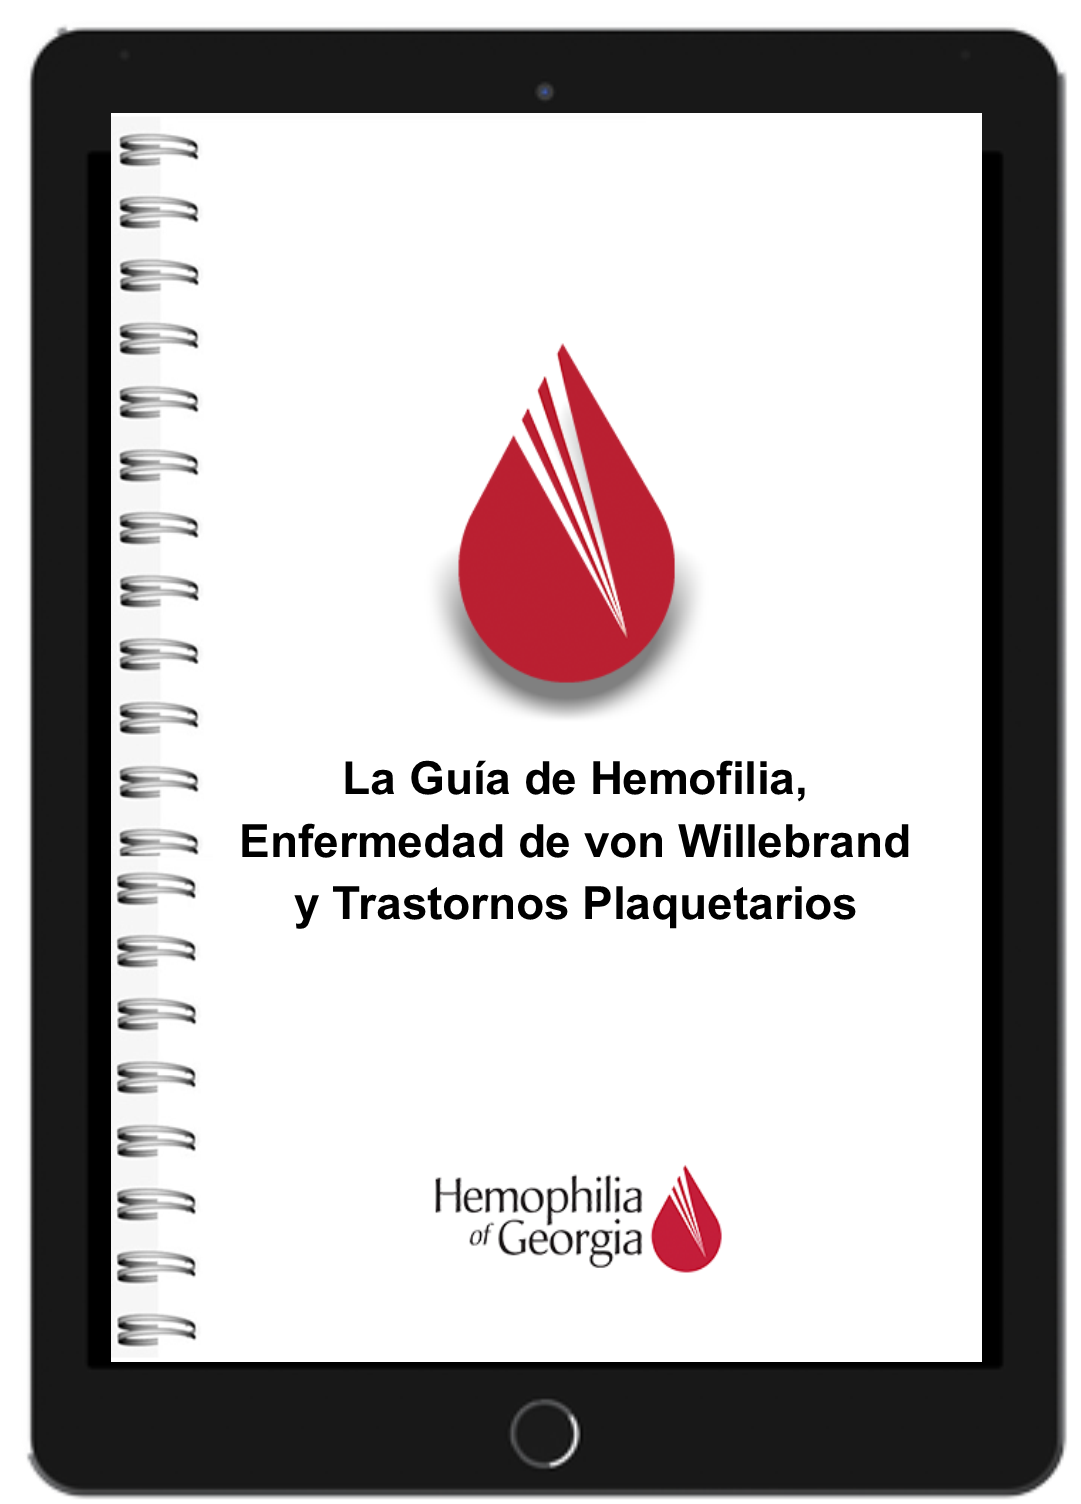 La Guía de Hemofilia, Enfermedad de von Willebrand y Trastornos Plaquetarios